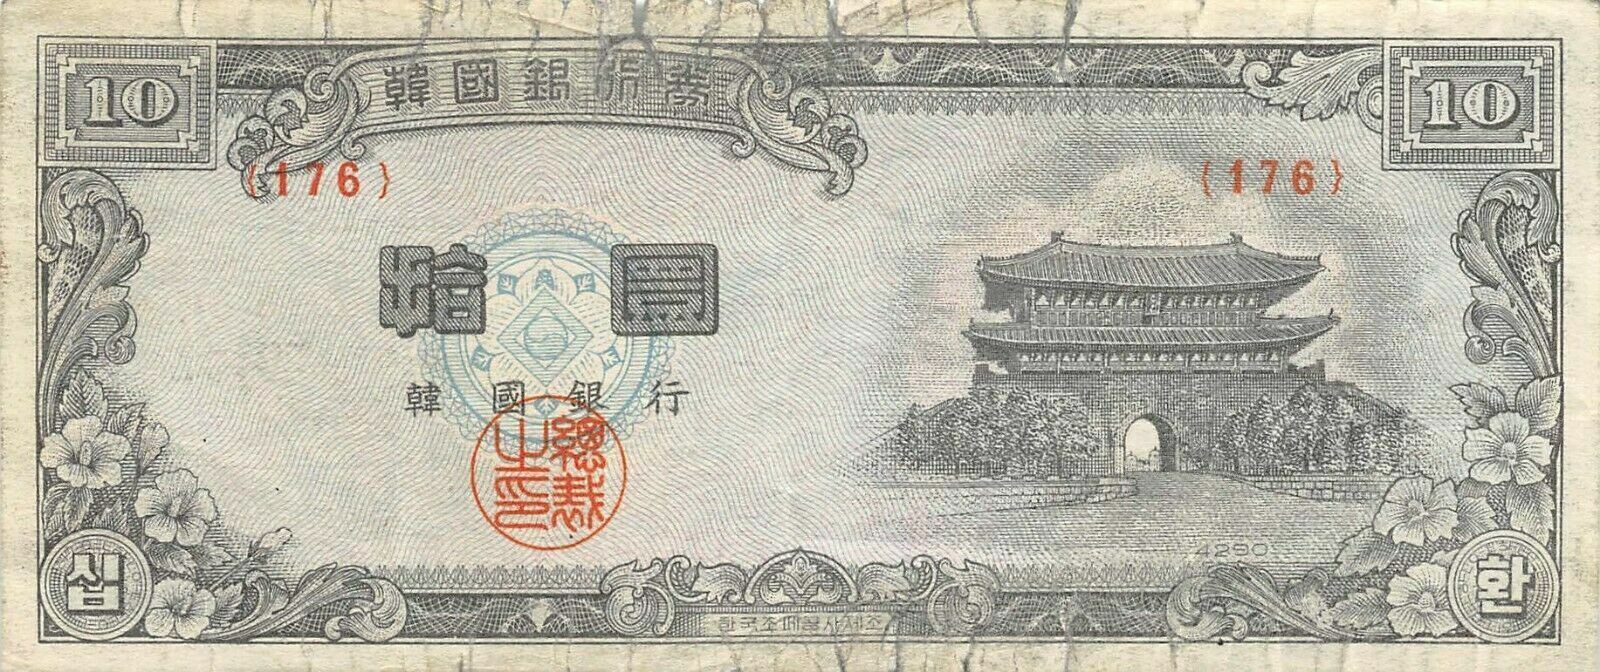 Korea  10  Hwan  4290 / 1957  P 17e  Block { 176 }  Circulated Banknote Me17